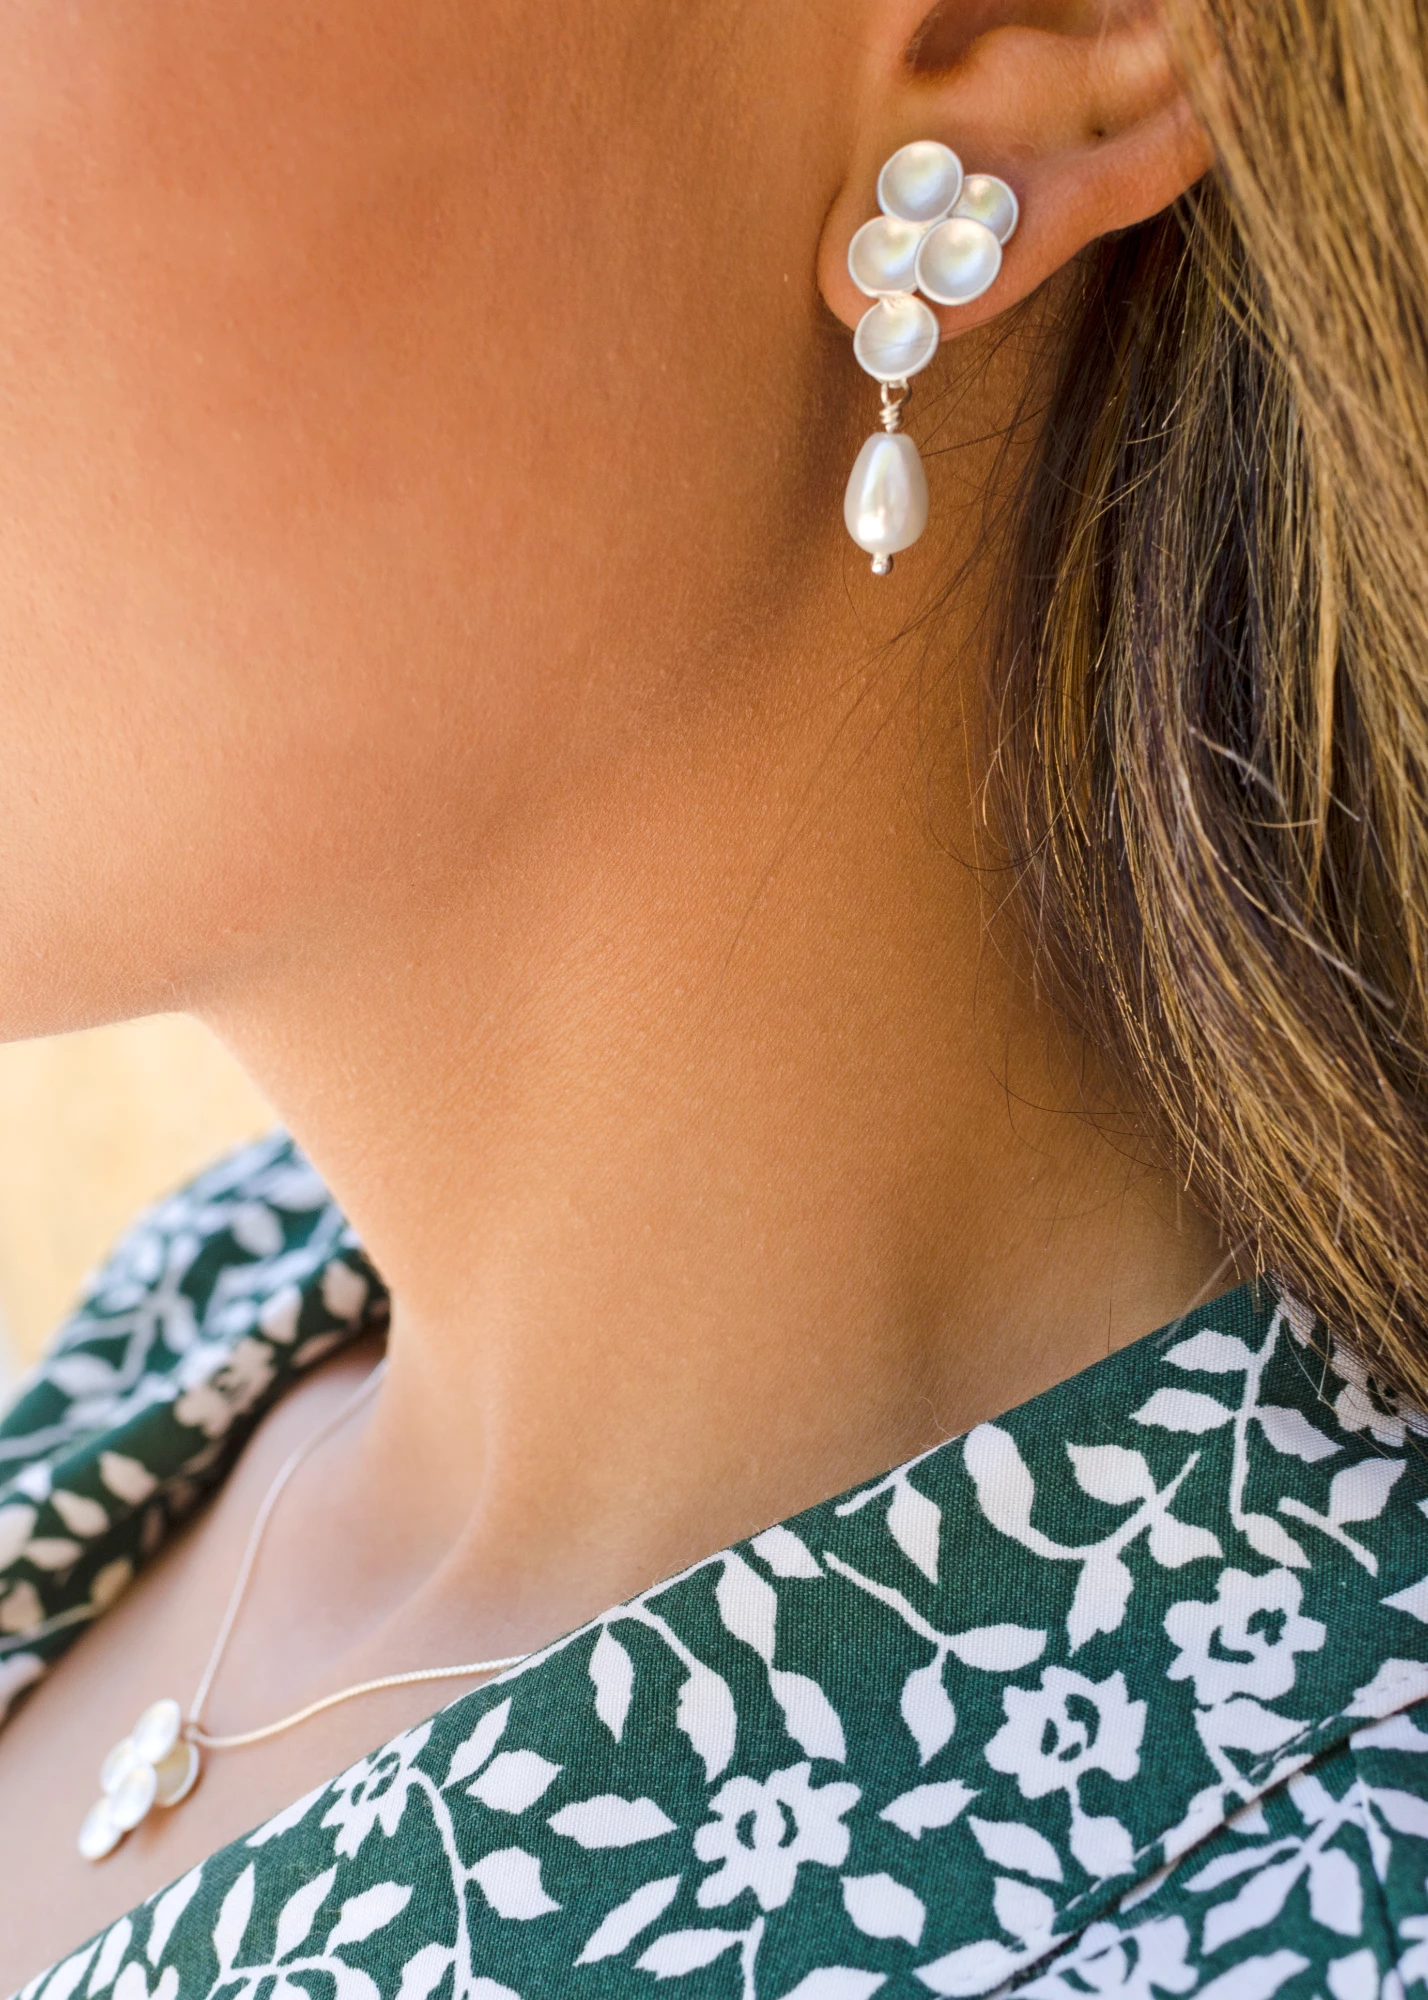 Grape earrings